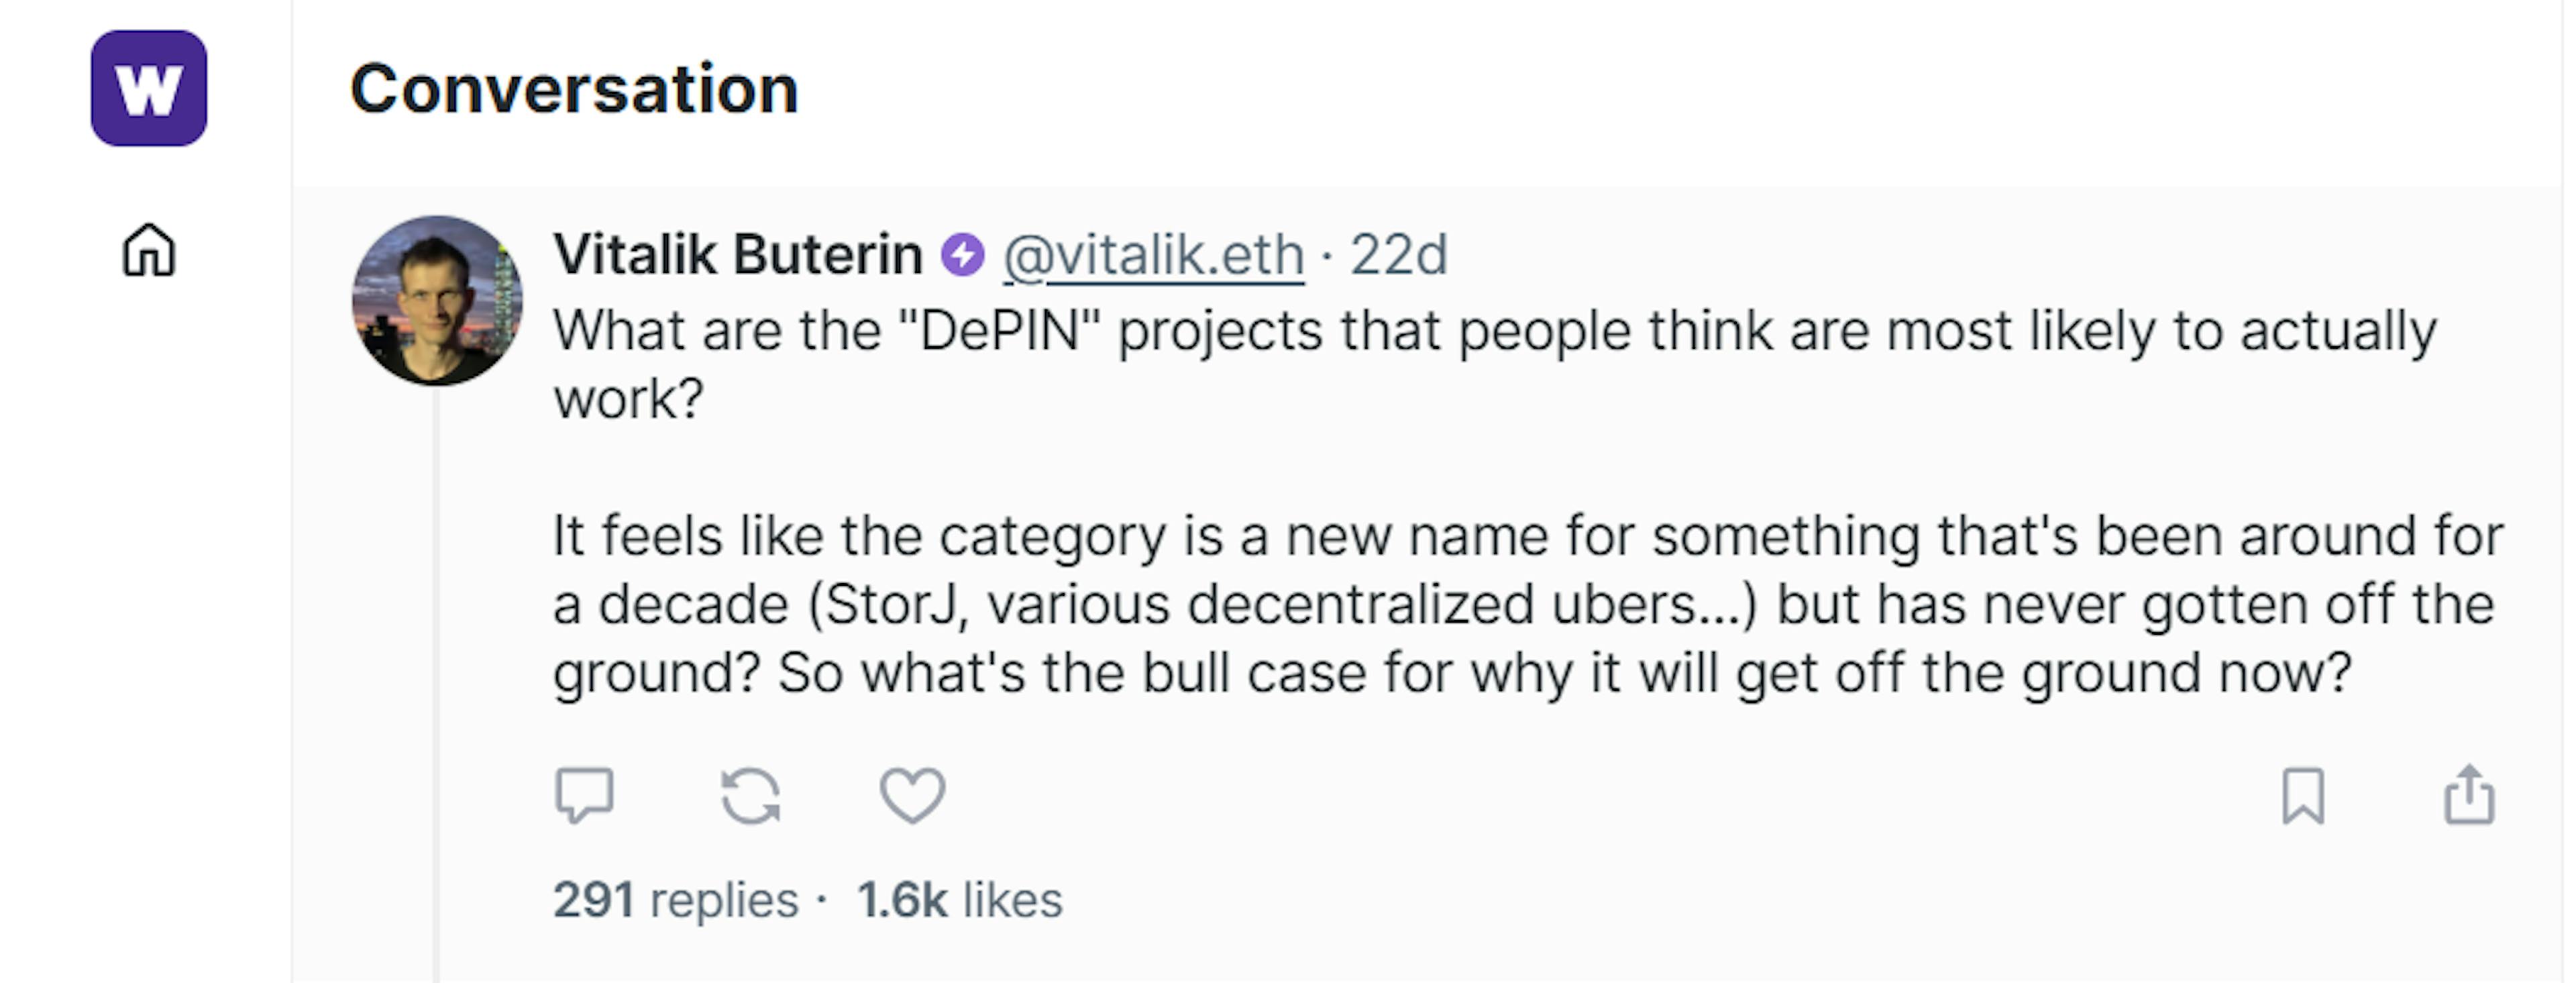 Vitalik Burterin sobre los proyectos DePin